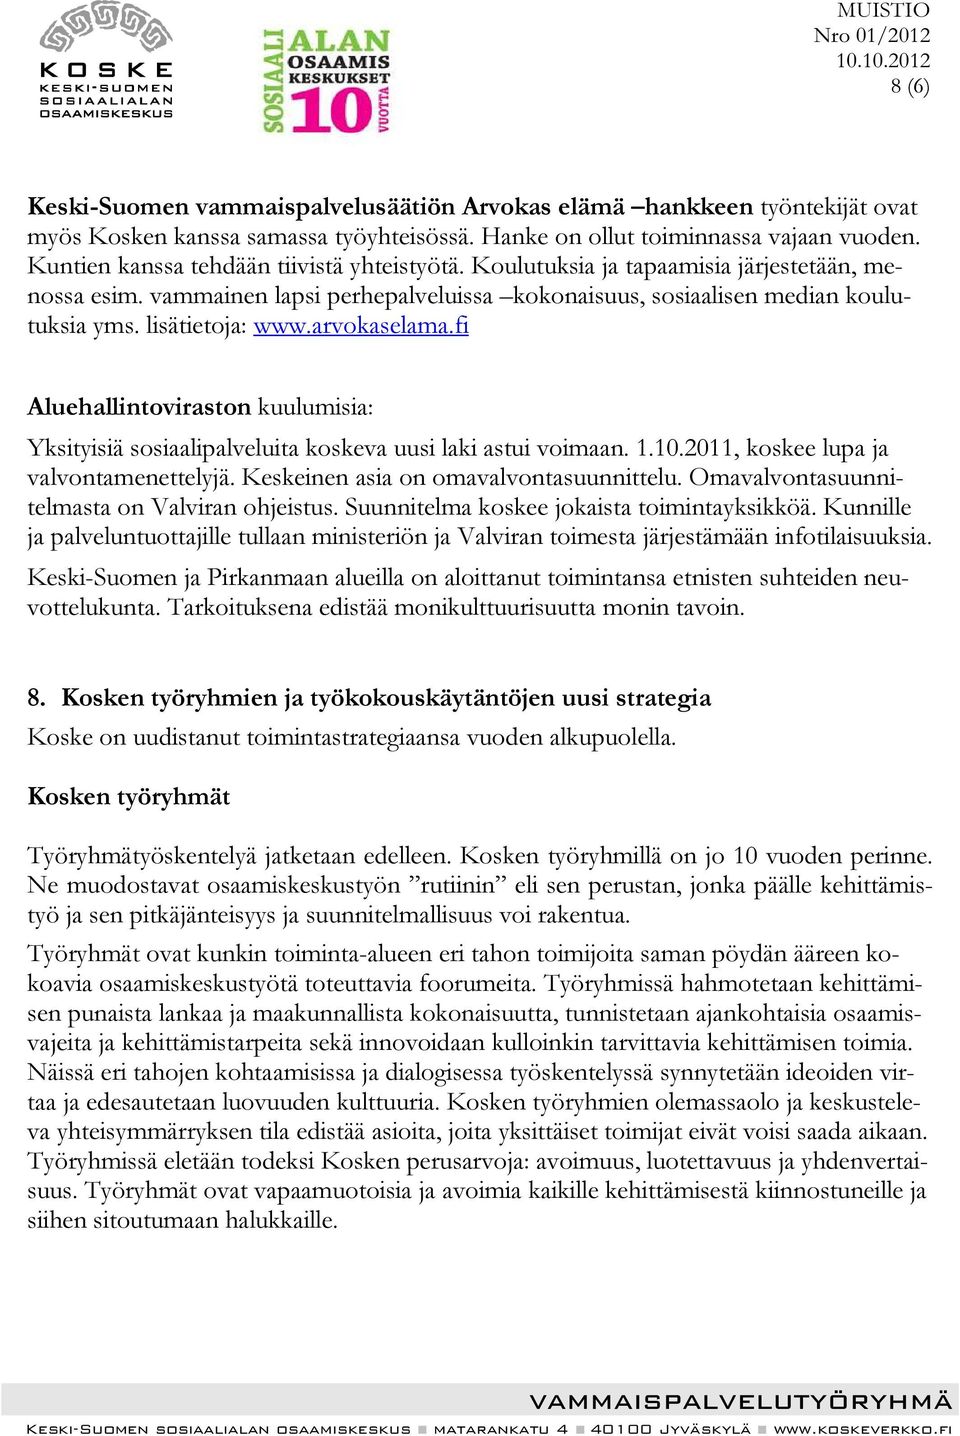 arvokaselama.fi Aluehallintoviraston kuulumisia: Yksityisiä sosiaalipalveluita koskeva uusi laki astui voimaan. 1.10.2011, koskee lupa ja valvontamenettelyjä. Keskeinen asia on omavalvontasuunnittelu.